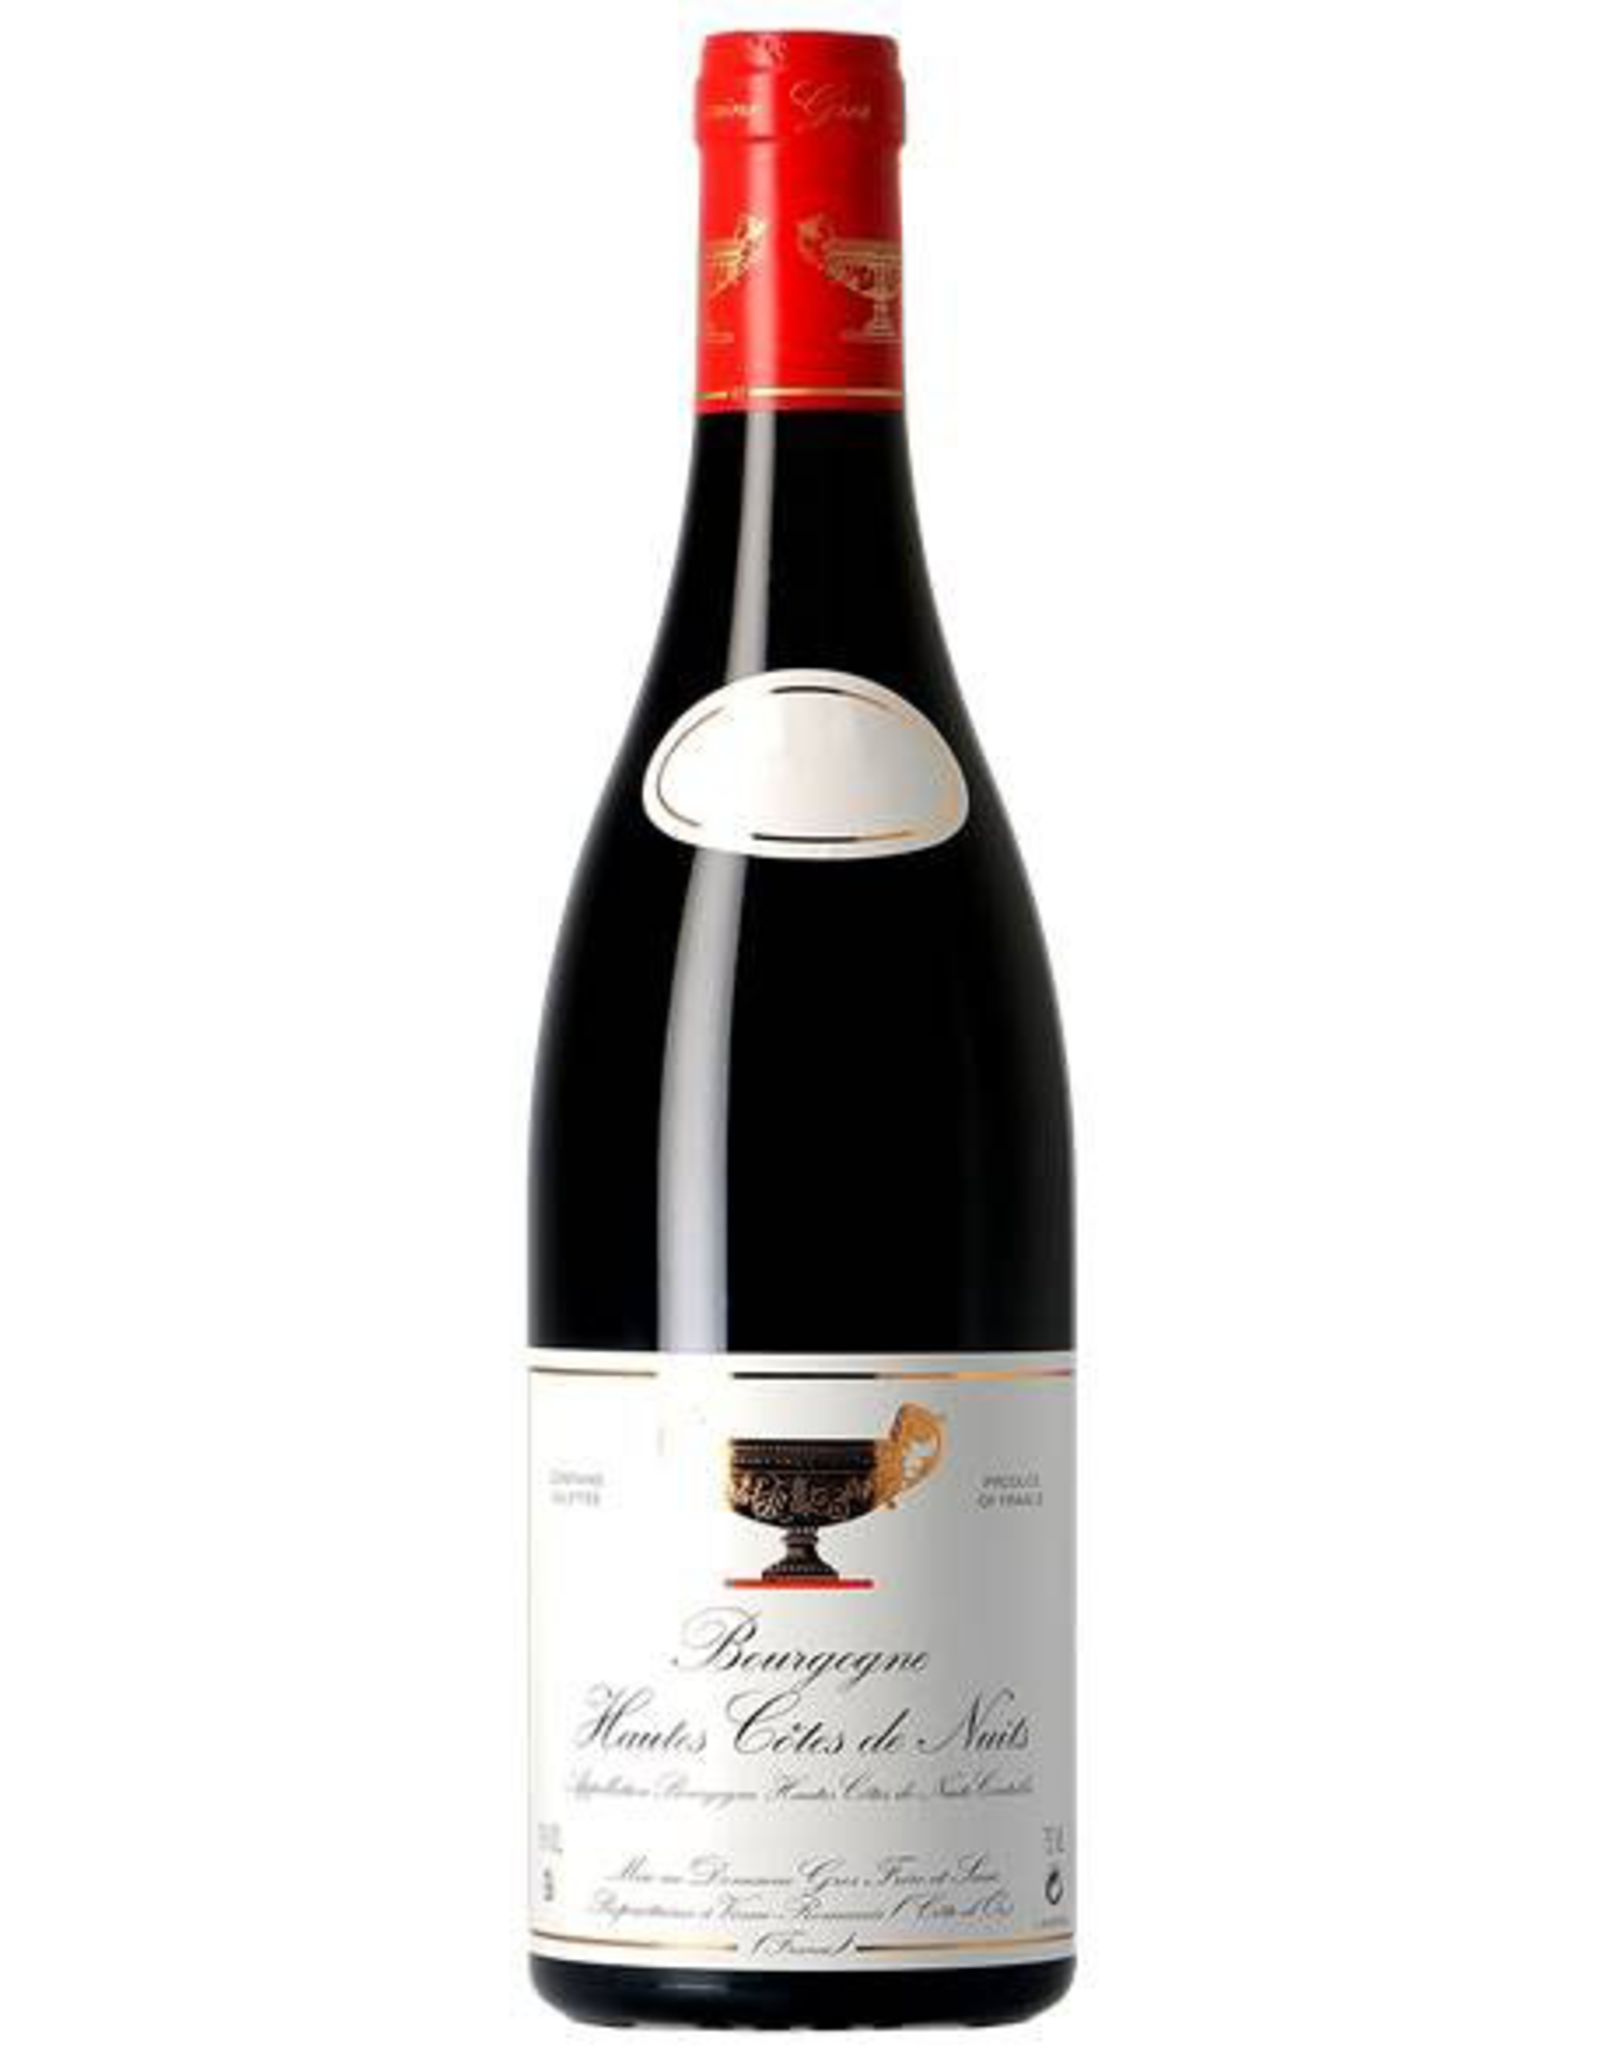 Red Wine 2016, Domaine Gros Frere et Soeur Bourgogne Hautes Cotes de Nuits, Pinot Noir, Nuits Saint Georges, Burgundy, France, 13% Alc, TW93